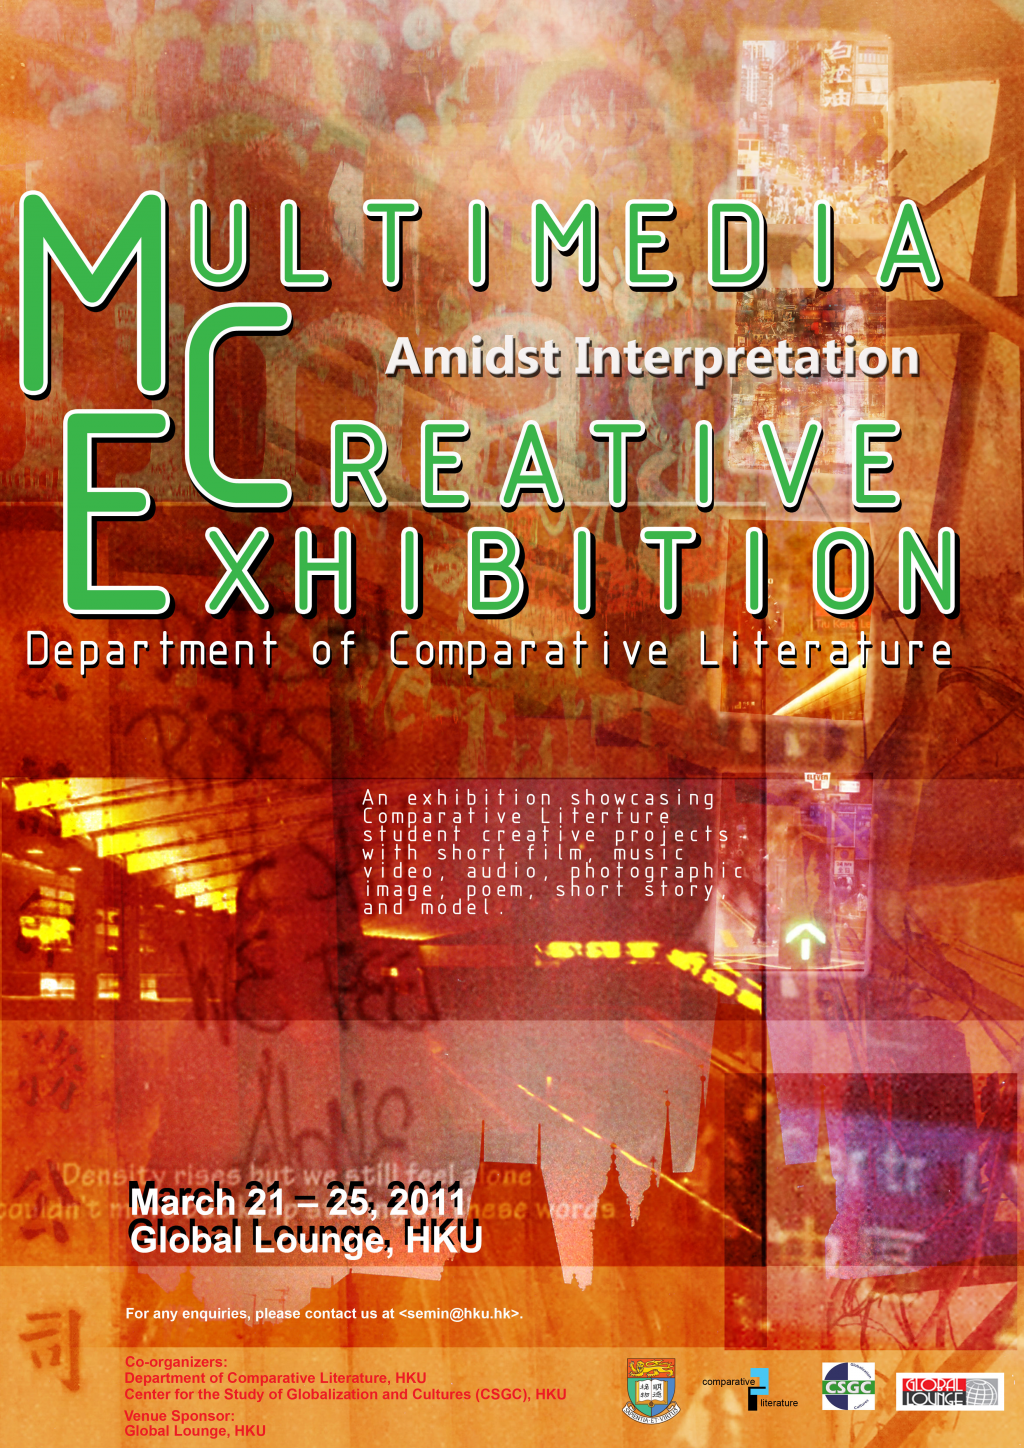 Amidst Interpretation: Multimedia Creative Exhibition